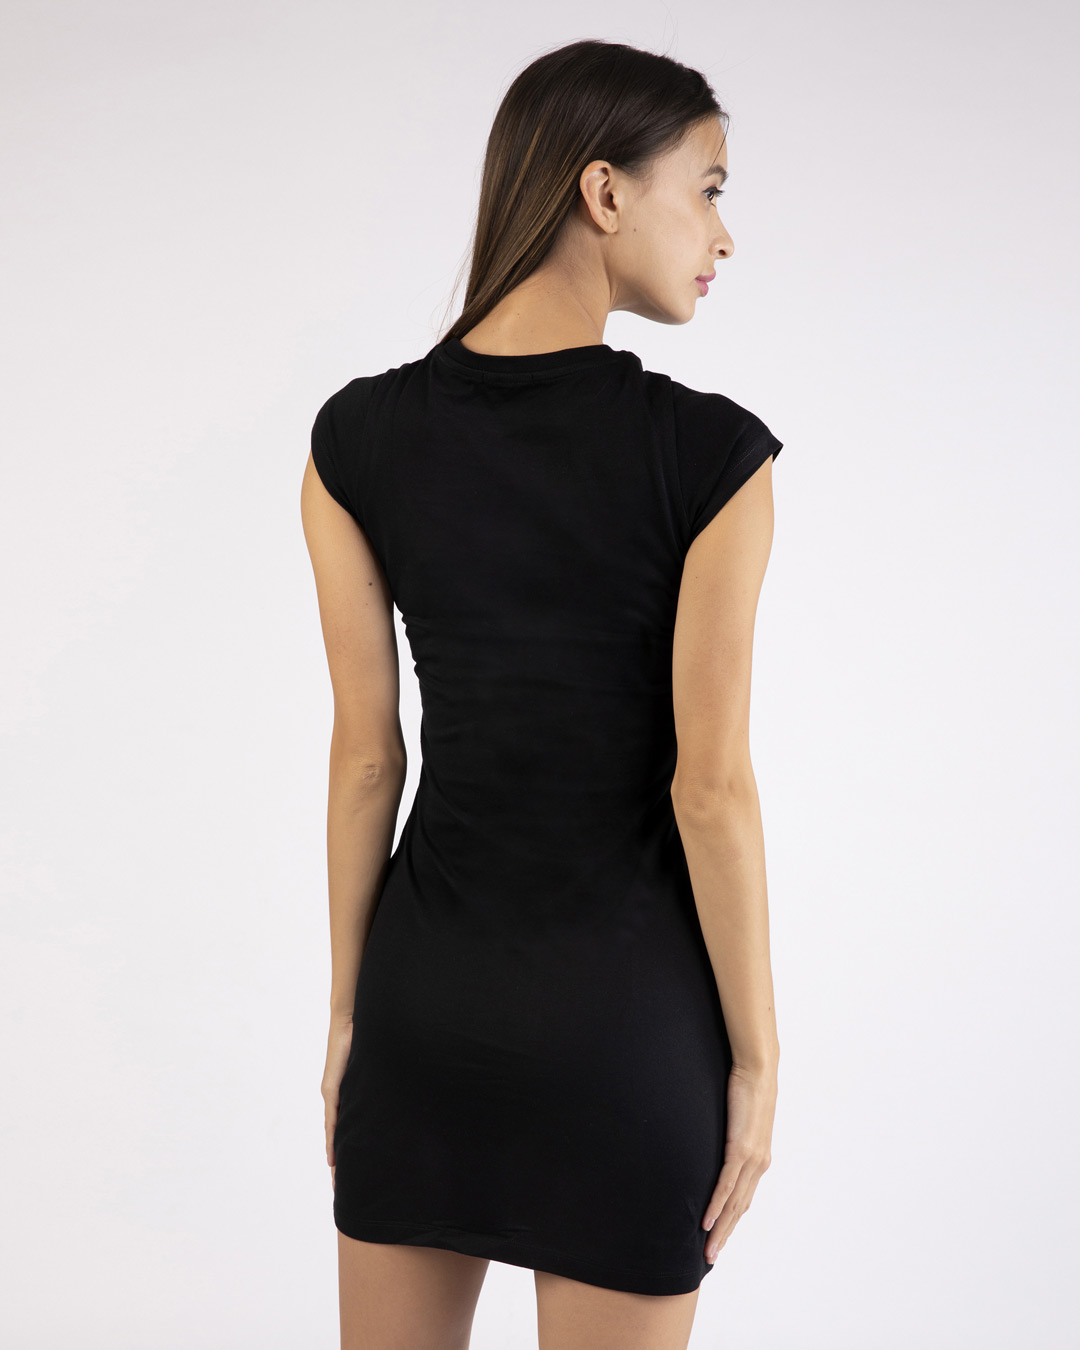 Shop Classic Tj Logo Single Jersey T-Shirt Dress (TJL) Black-Back